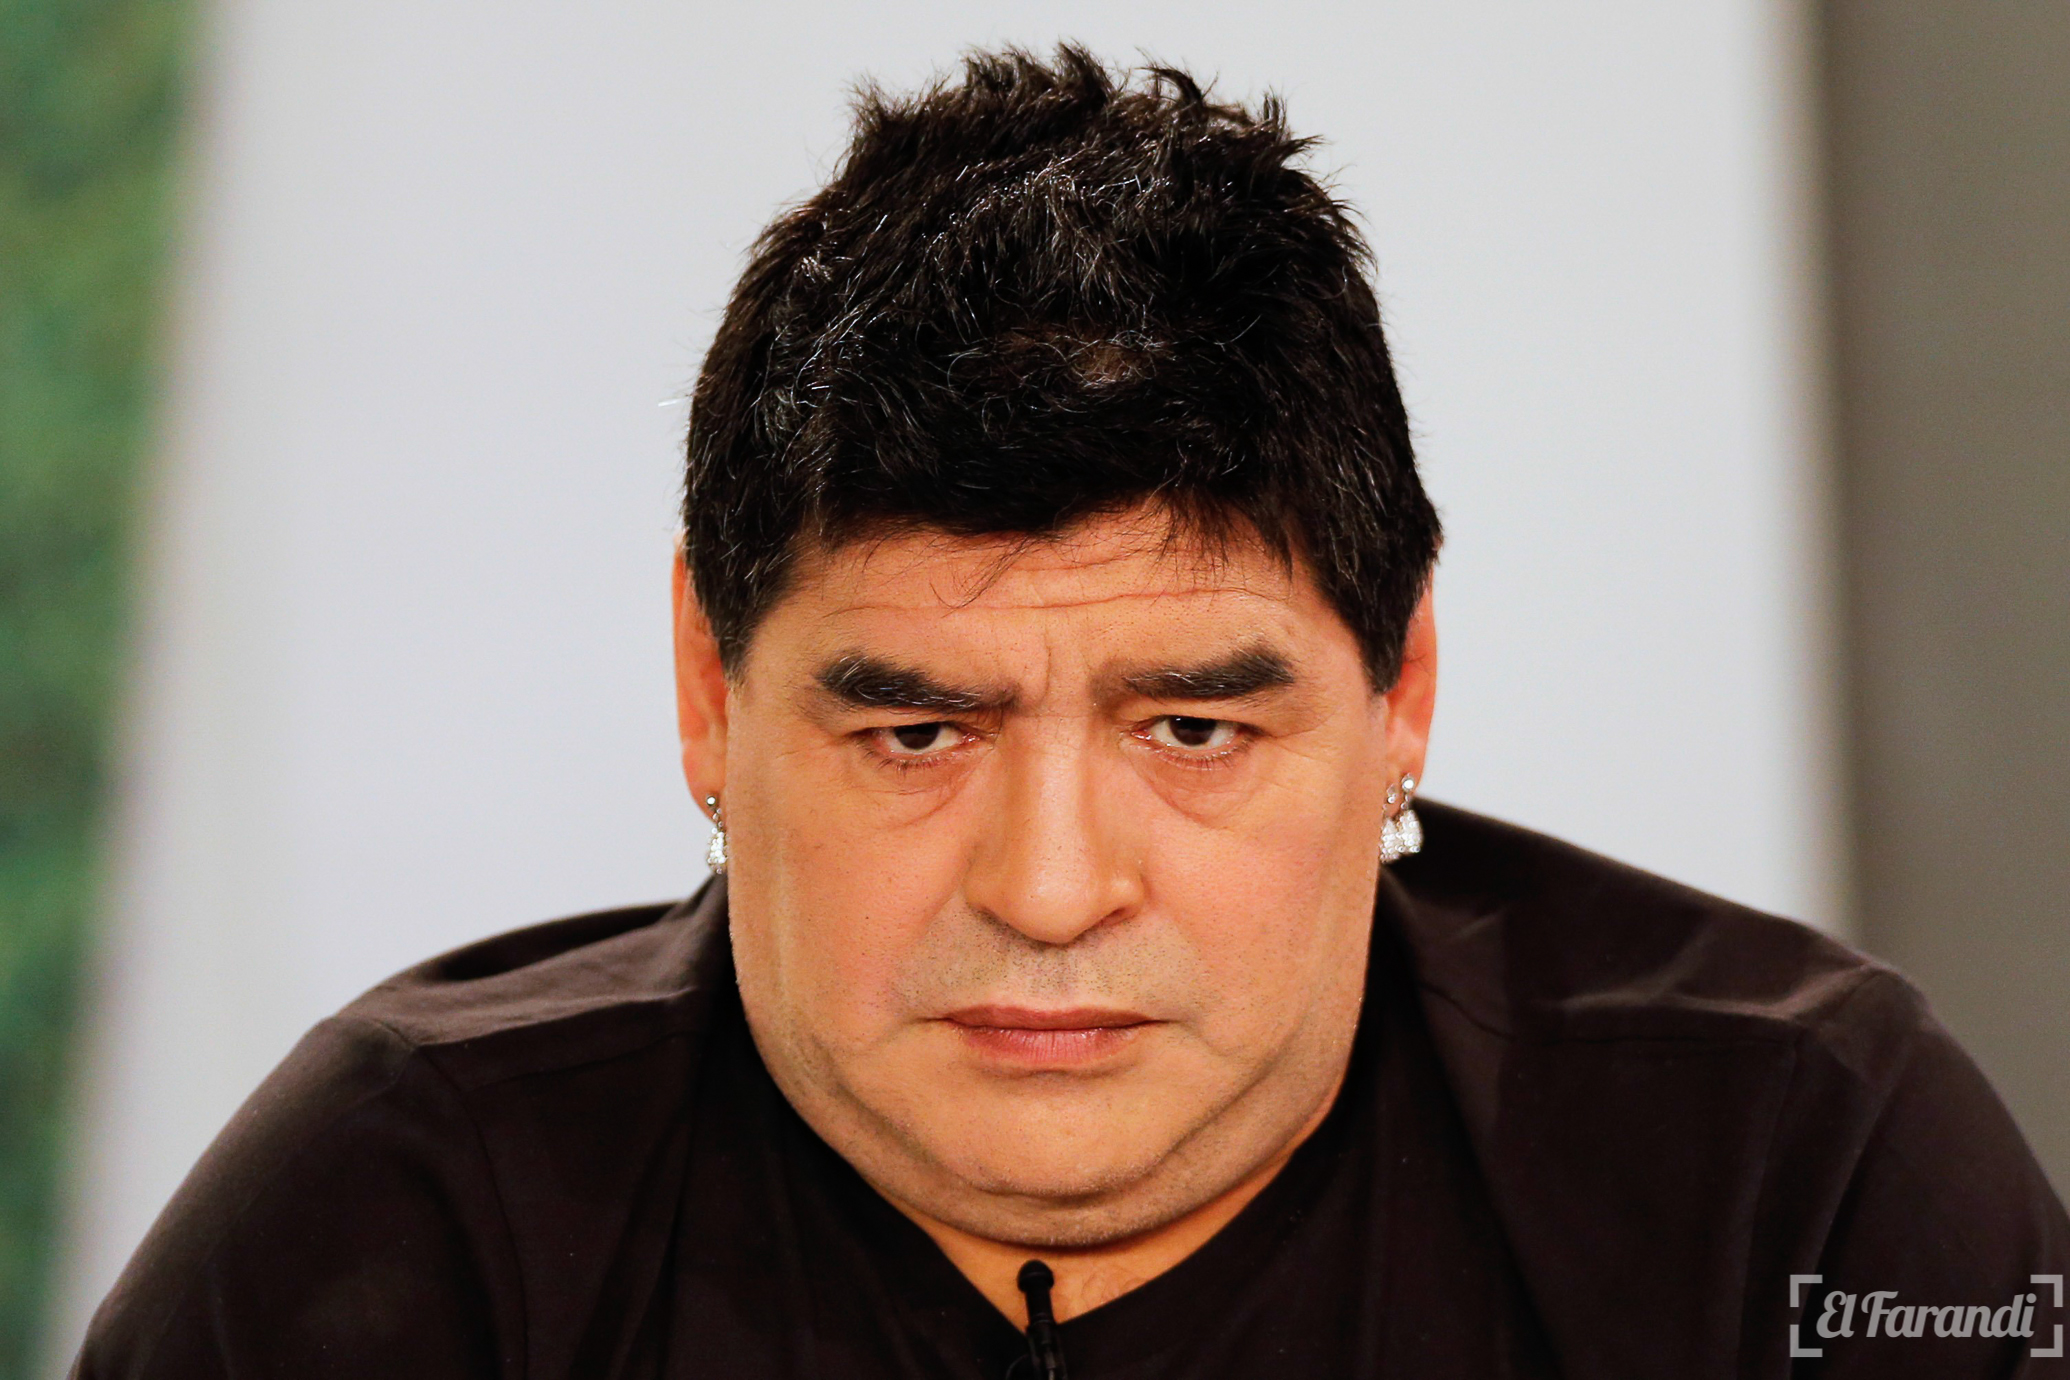 Por burlarse de Trump le volvieron a negar la visa a Maradona